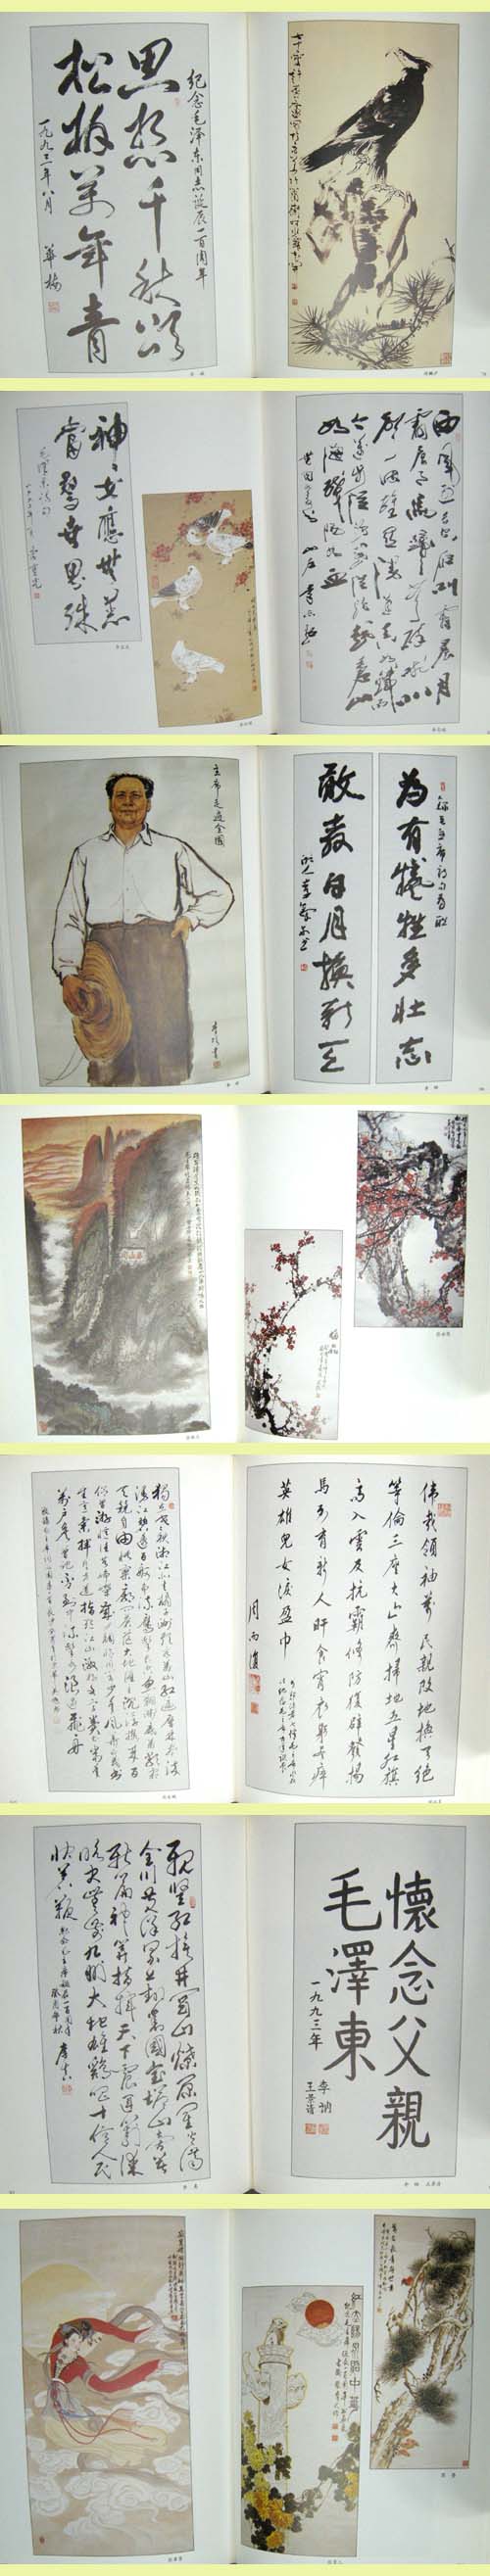 중국 서화선(모택동탄신1백주년기념) - 서예. 문인화. 한국화. 중국서화집 -